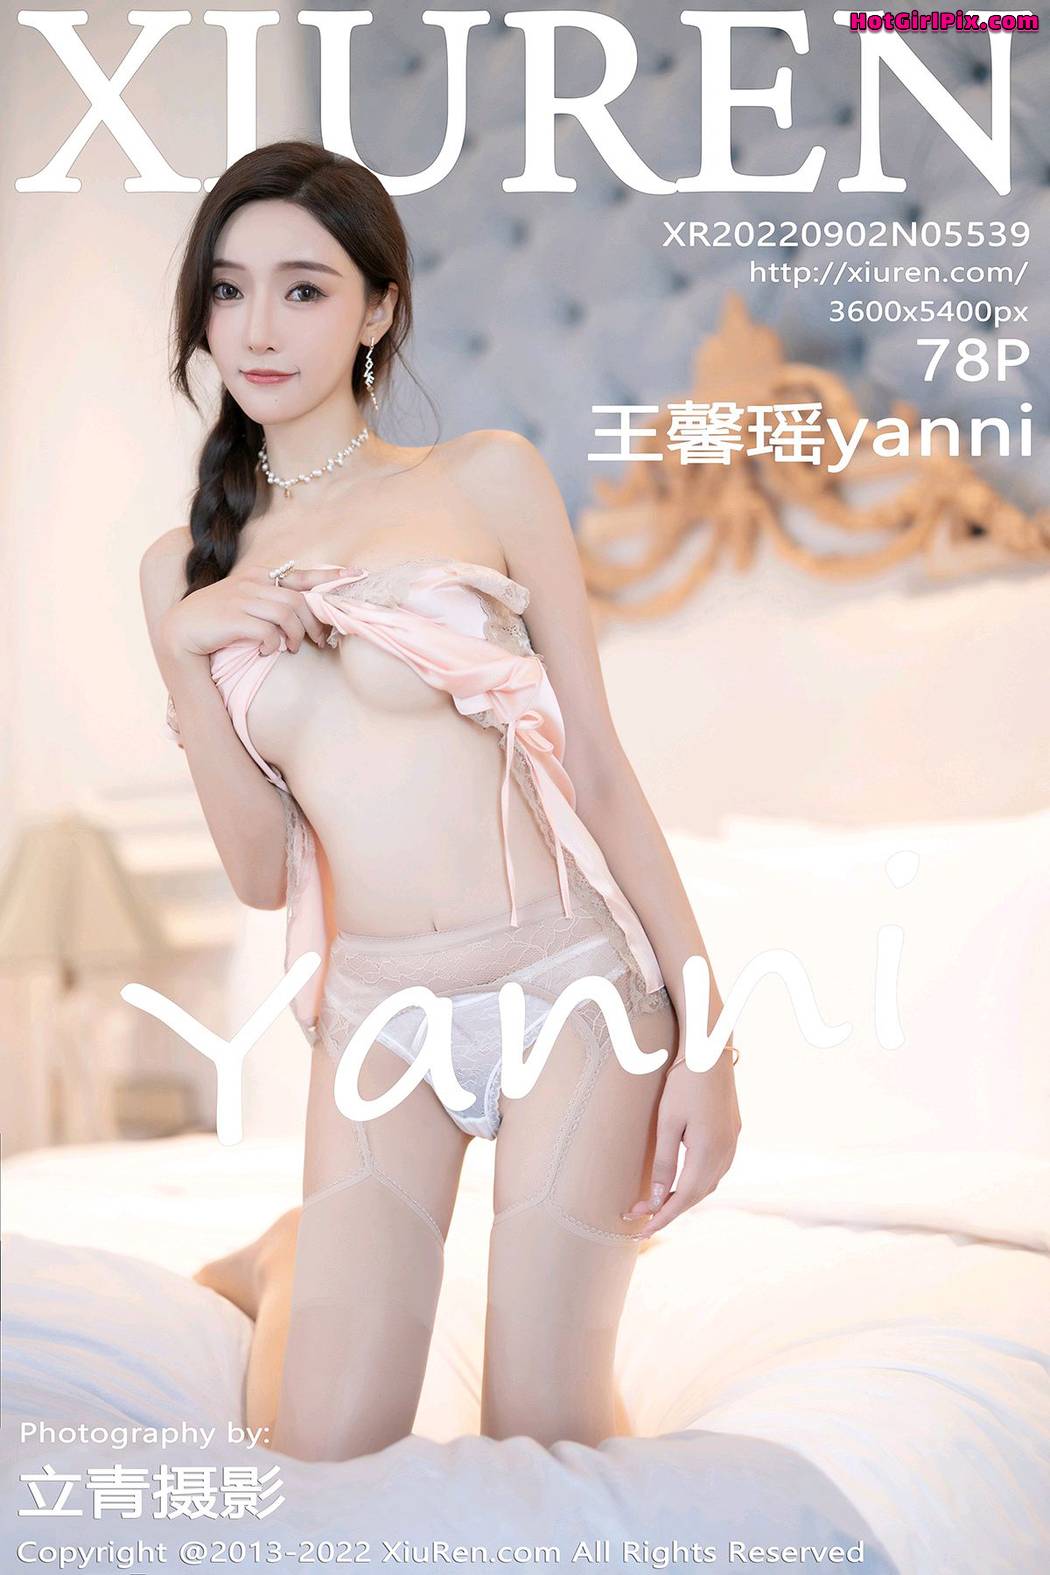 [XIUREN] No.5539 Wang Xin Yao 王馨瑶yanni Cover Photo